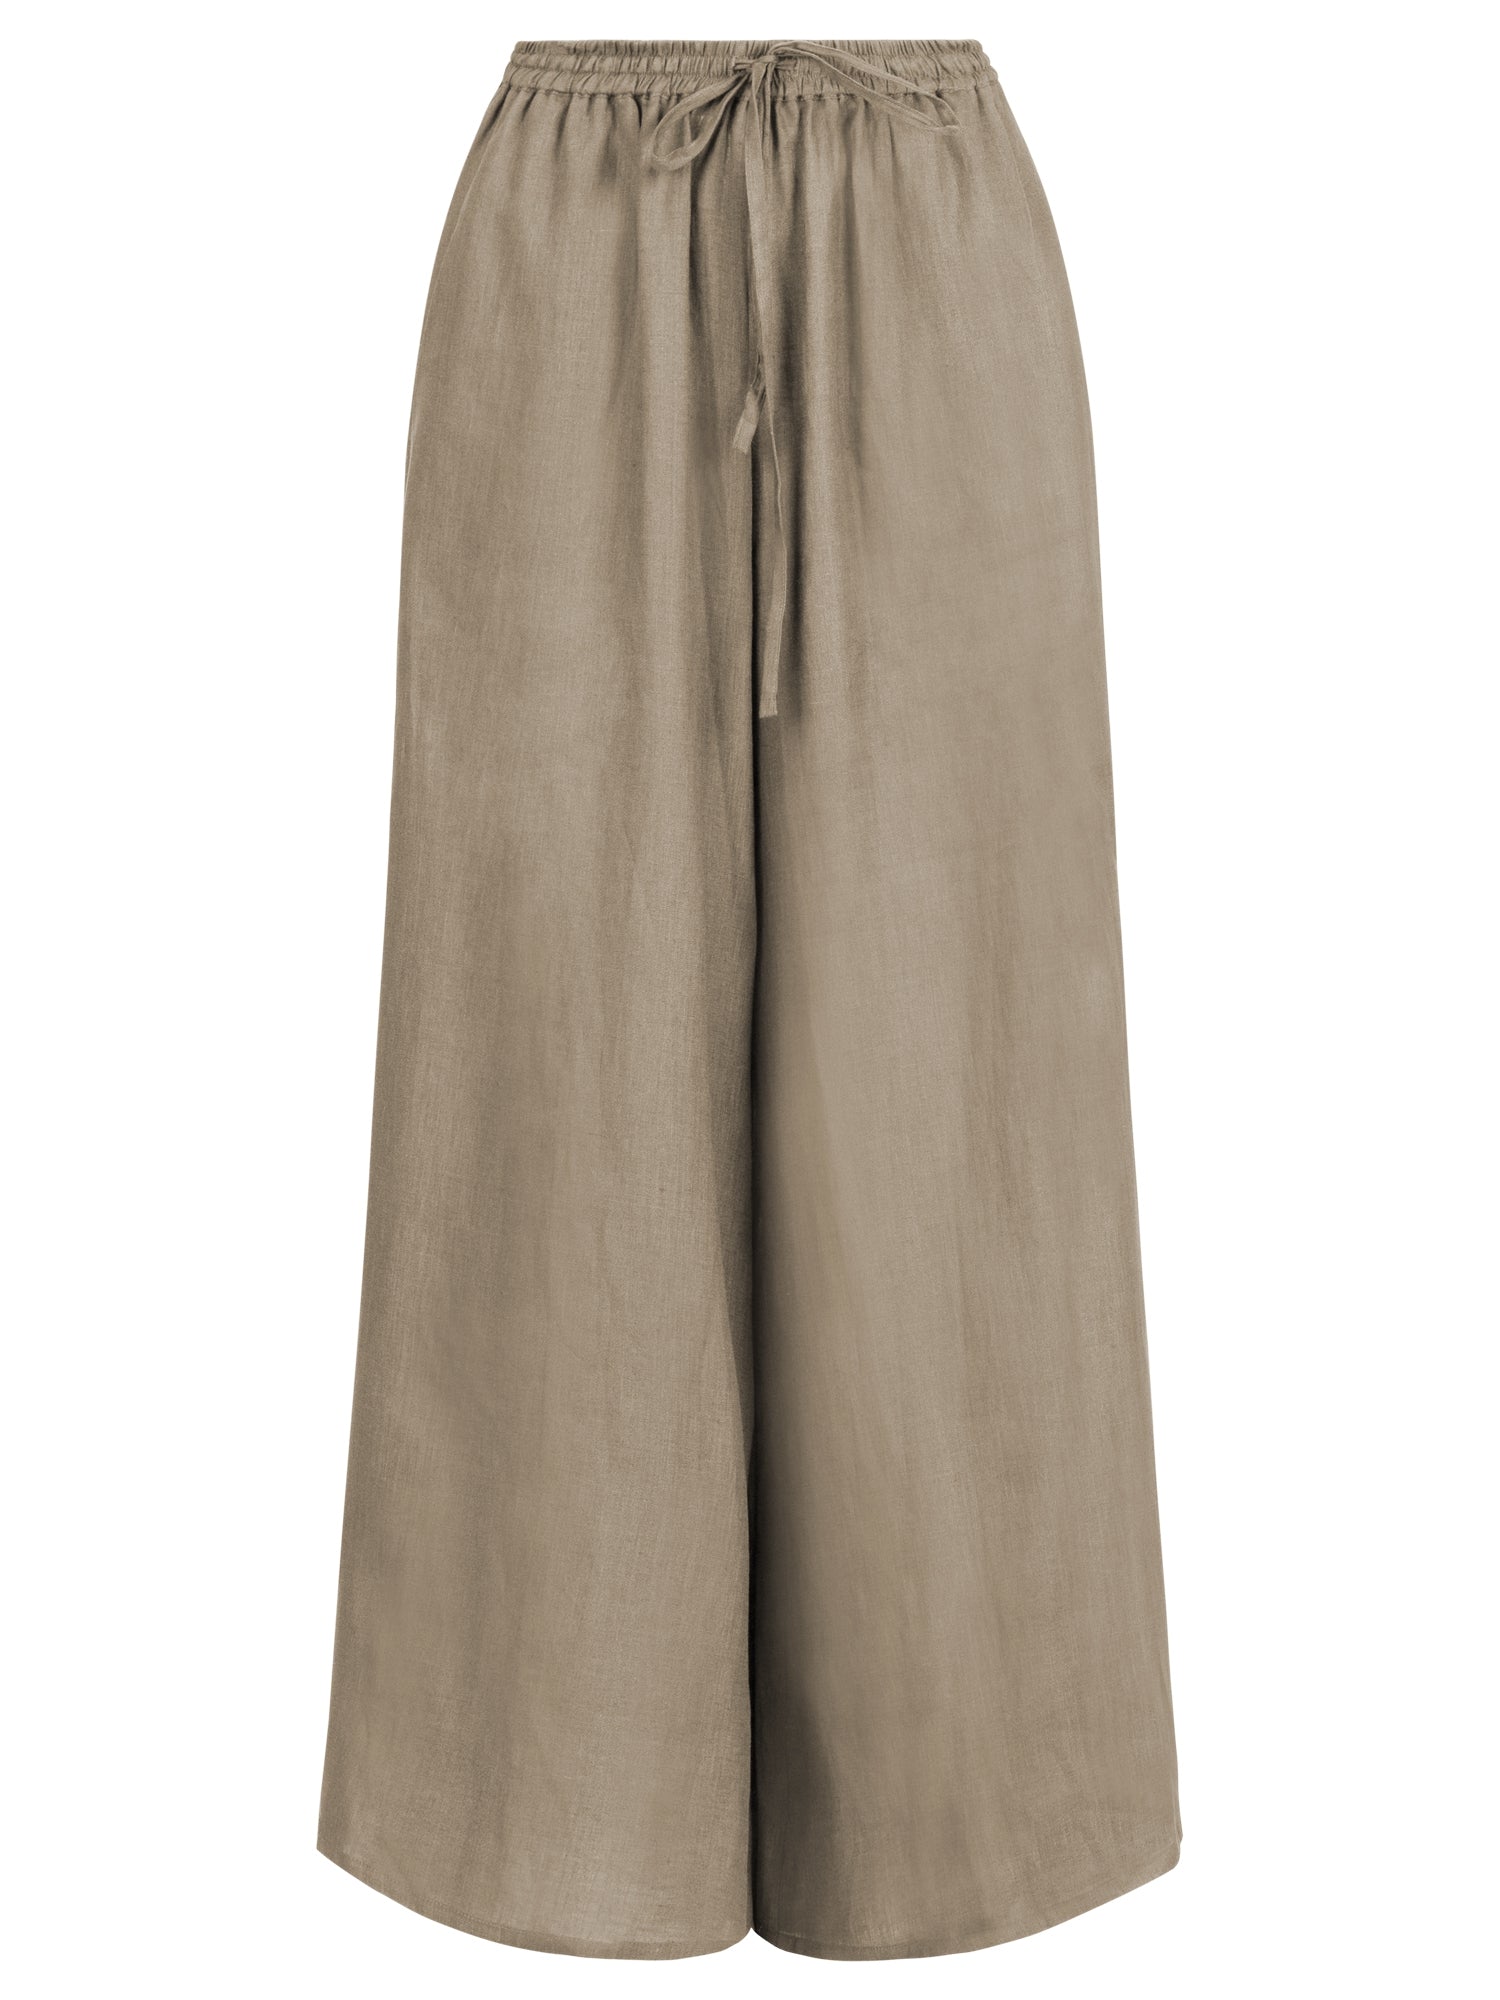 Mint & Mia Leinen Hose aus hochwertigem Leinen Material mit Basic Stil | khaki